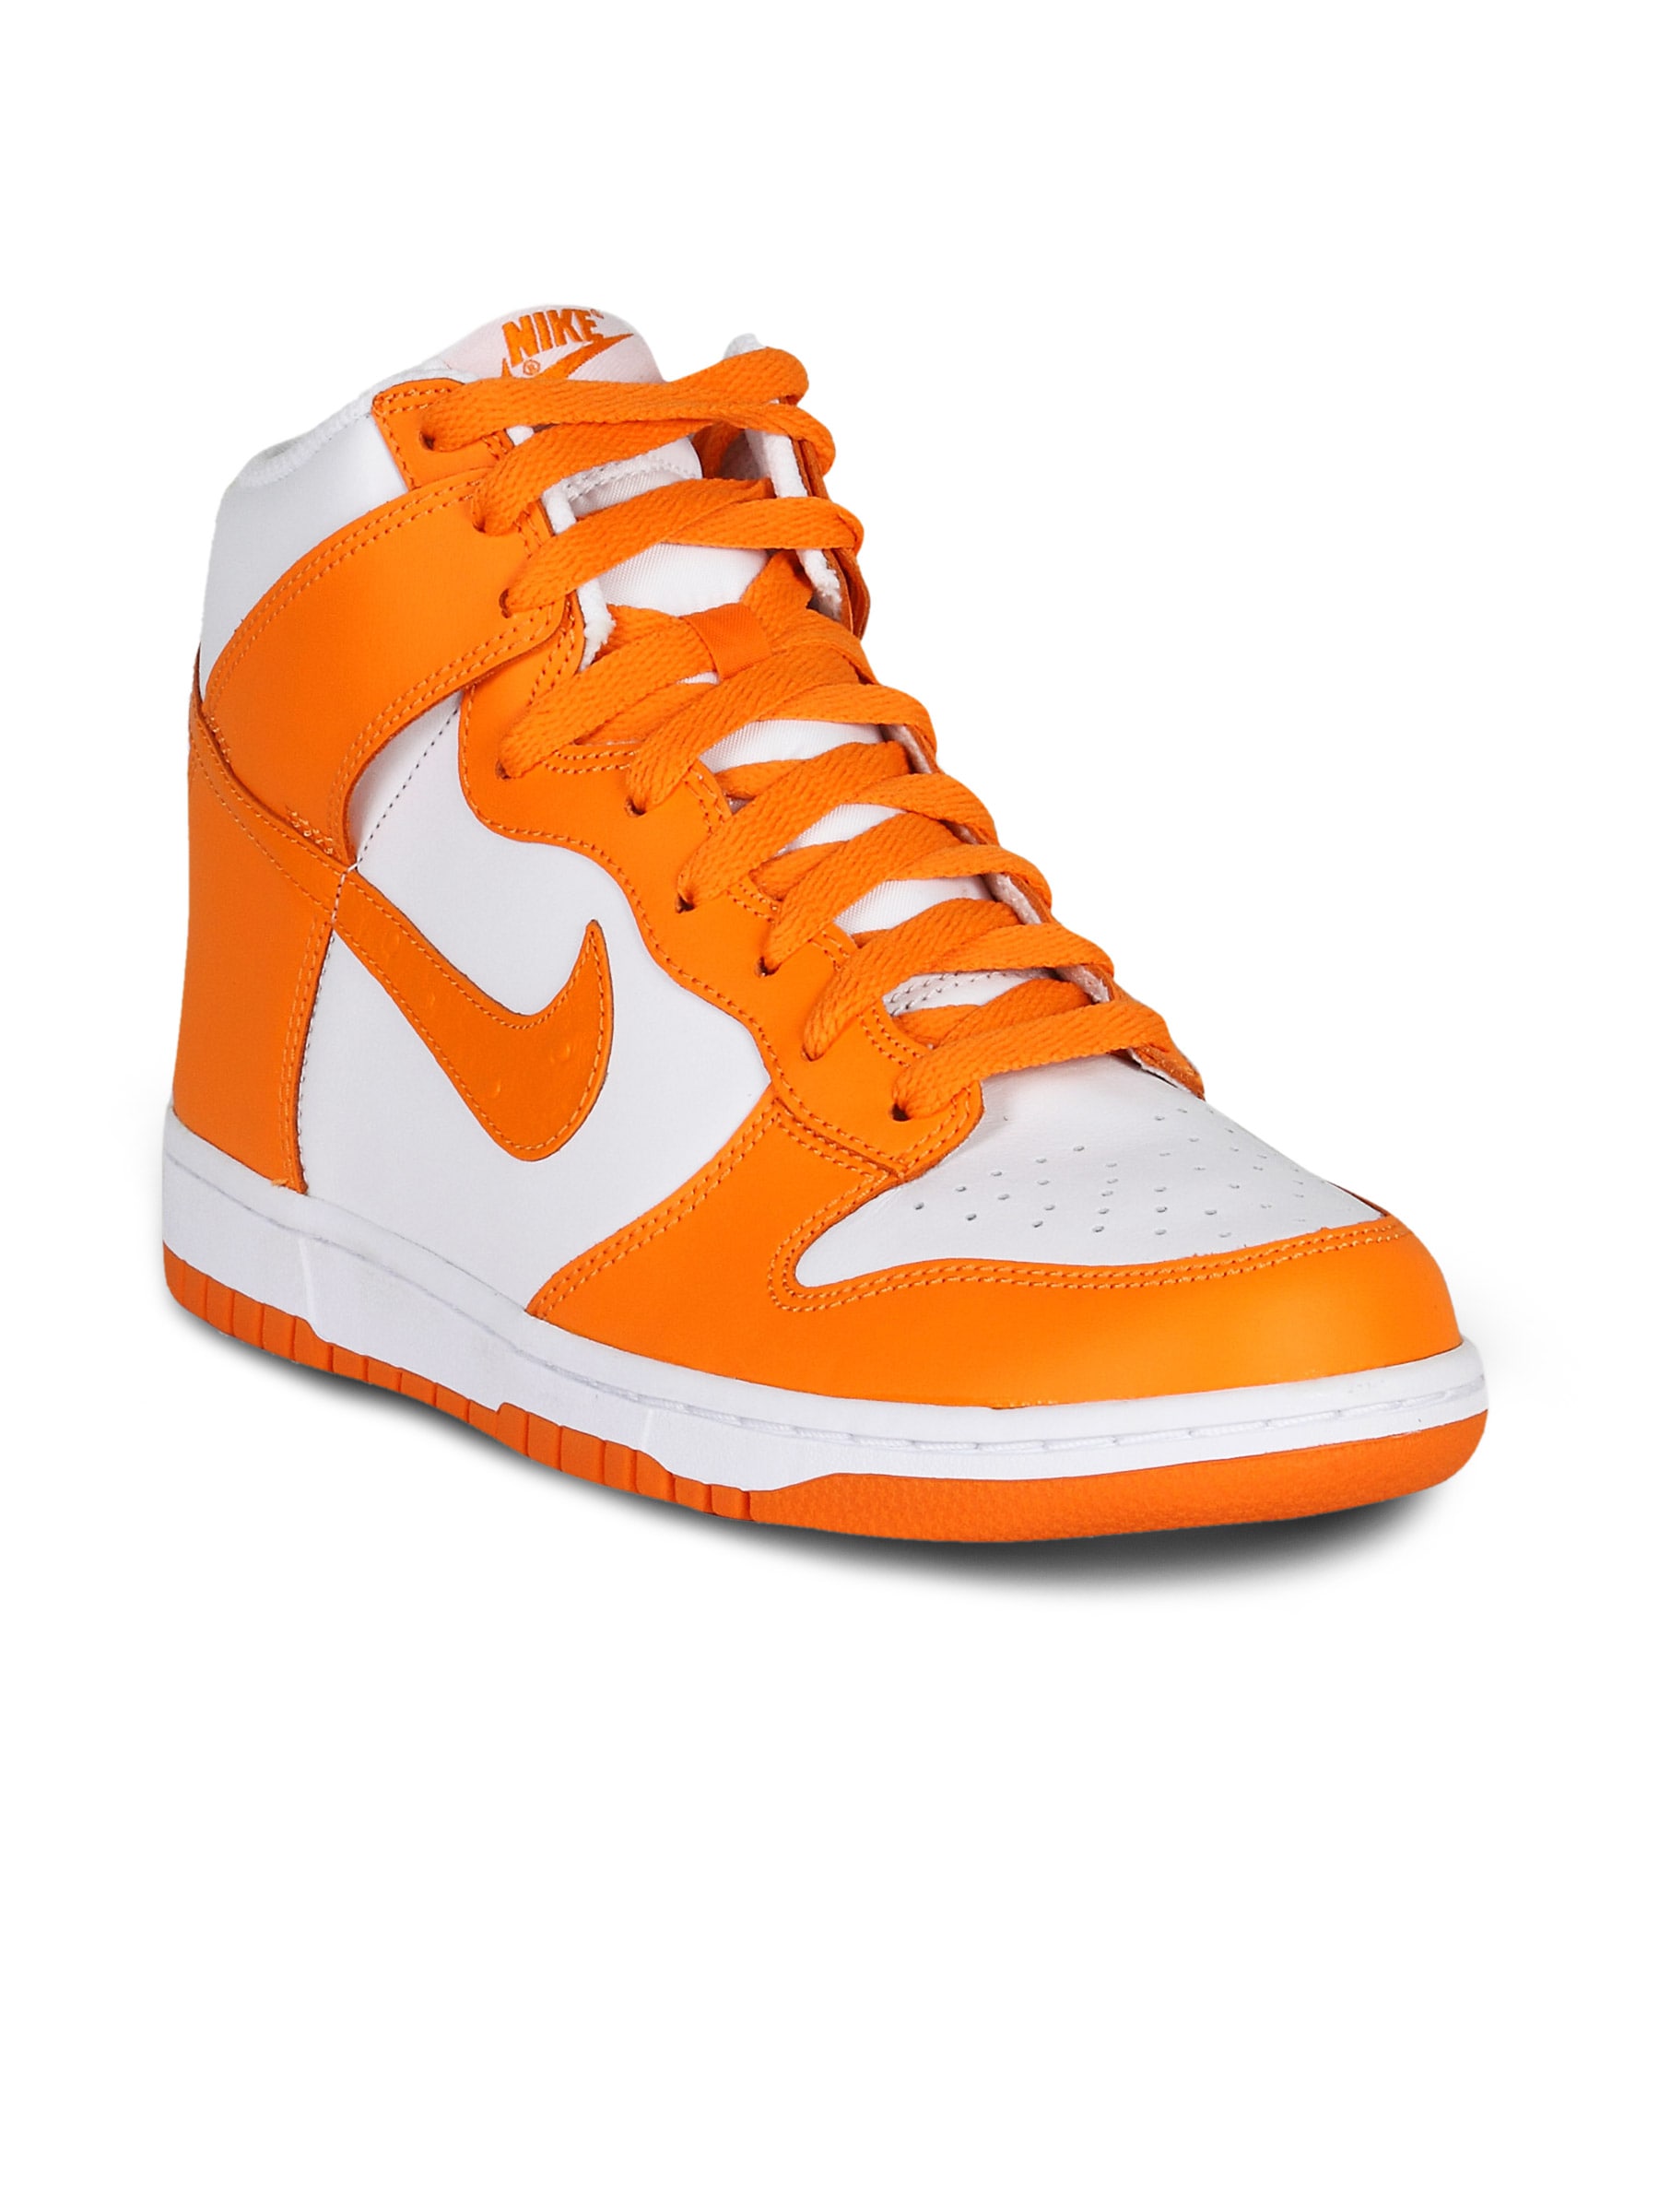 Nike Men's Dunk High Orange Shoe